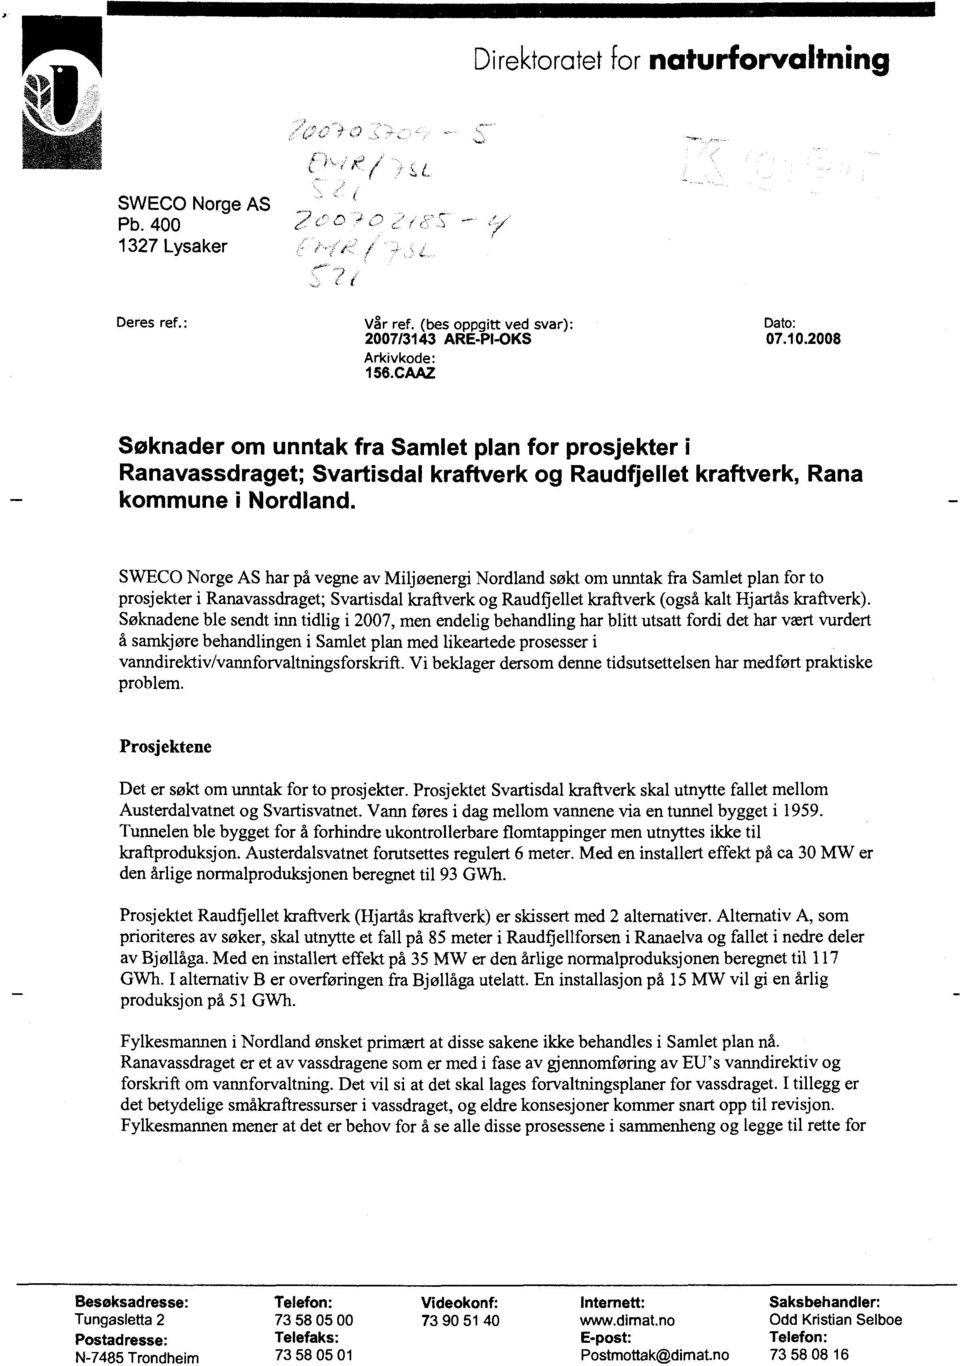 SWECO Norge AS har på vegne av Miljøenergi Nordland søkt om unntak fra Samlet plan for to prosjekter i Ranavassdraget; Svartisdal kraftverk og Raudflellet kraftverk (også kalt Hjartås kraftverk).